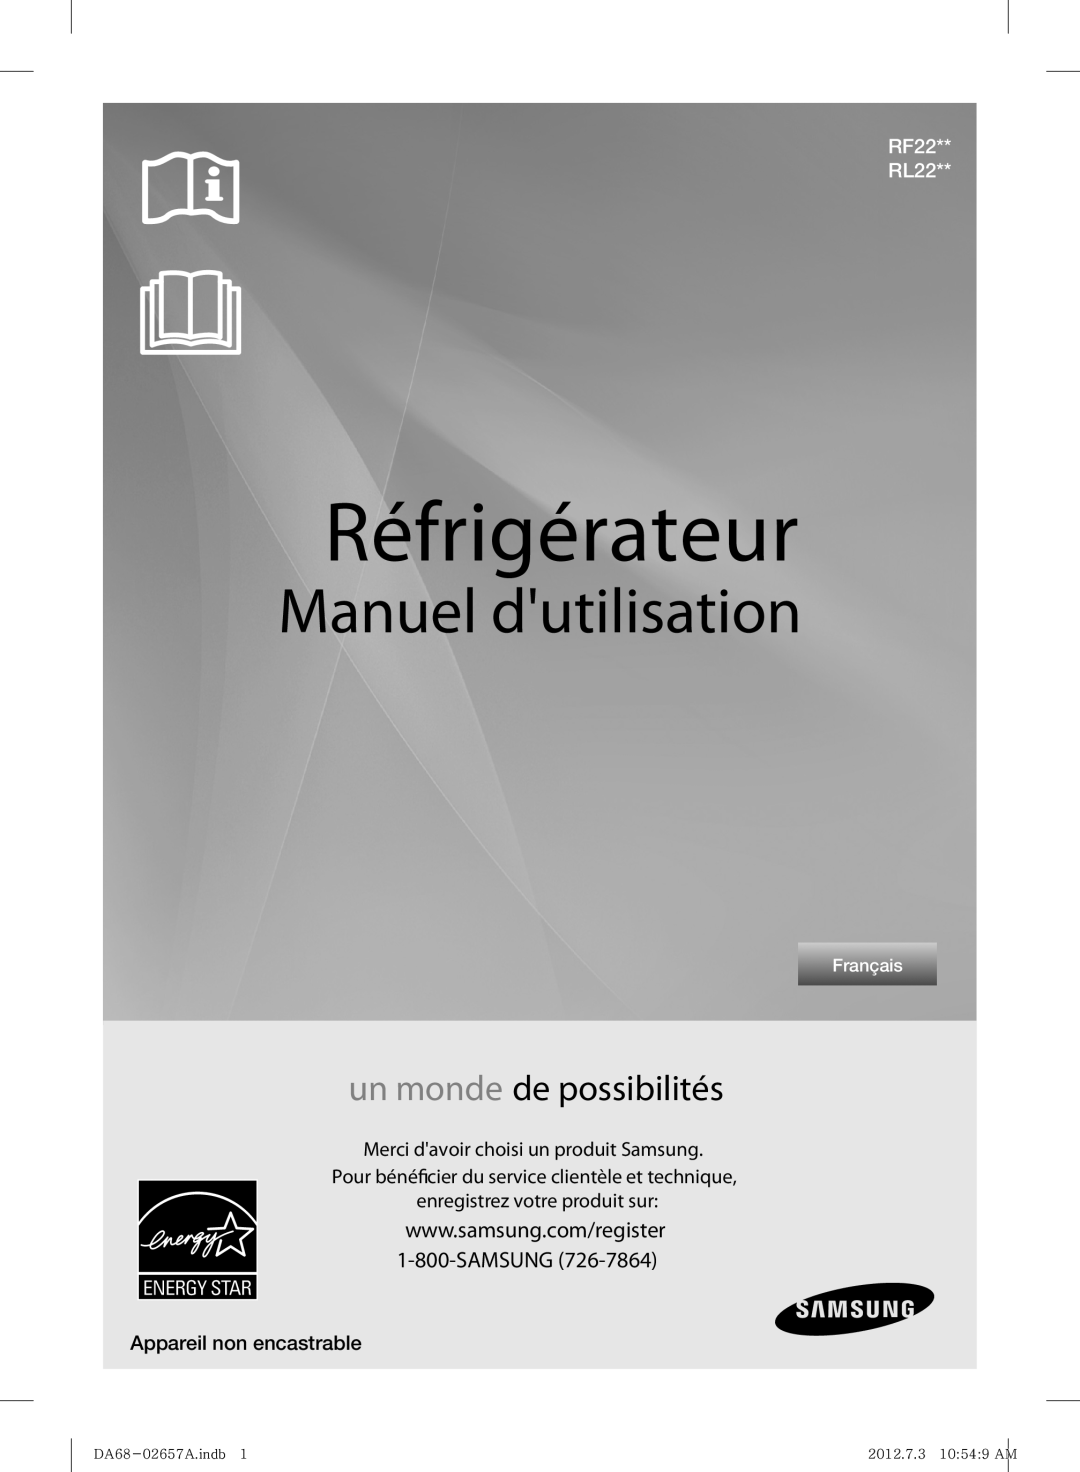 Samsung RF221NCTABC Réfrigérateur, Manuel dutilisation, un monde de possibilités, Merci davoir choisi un produit Samsung 